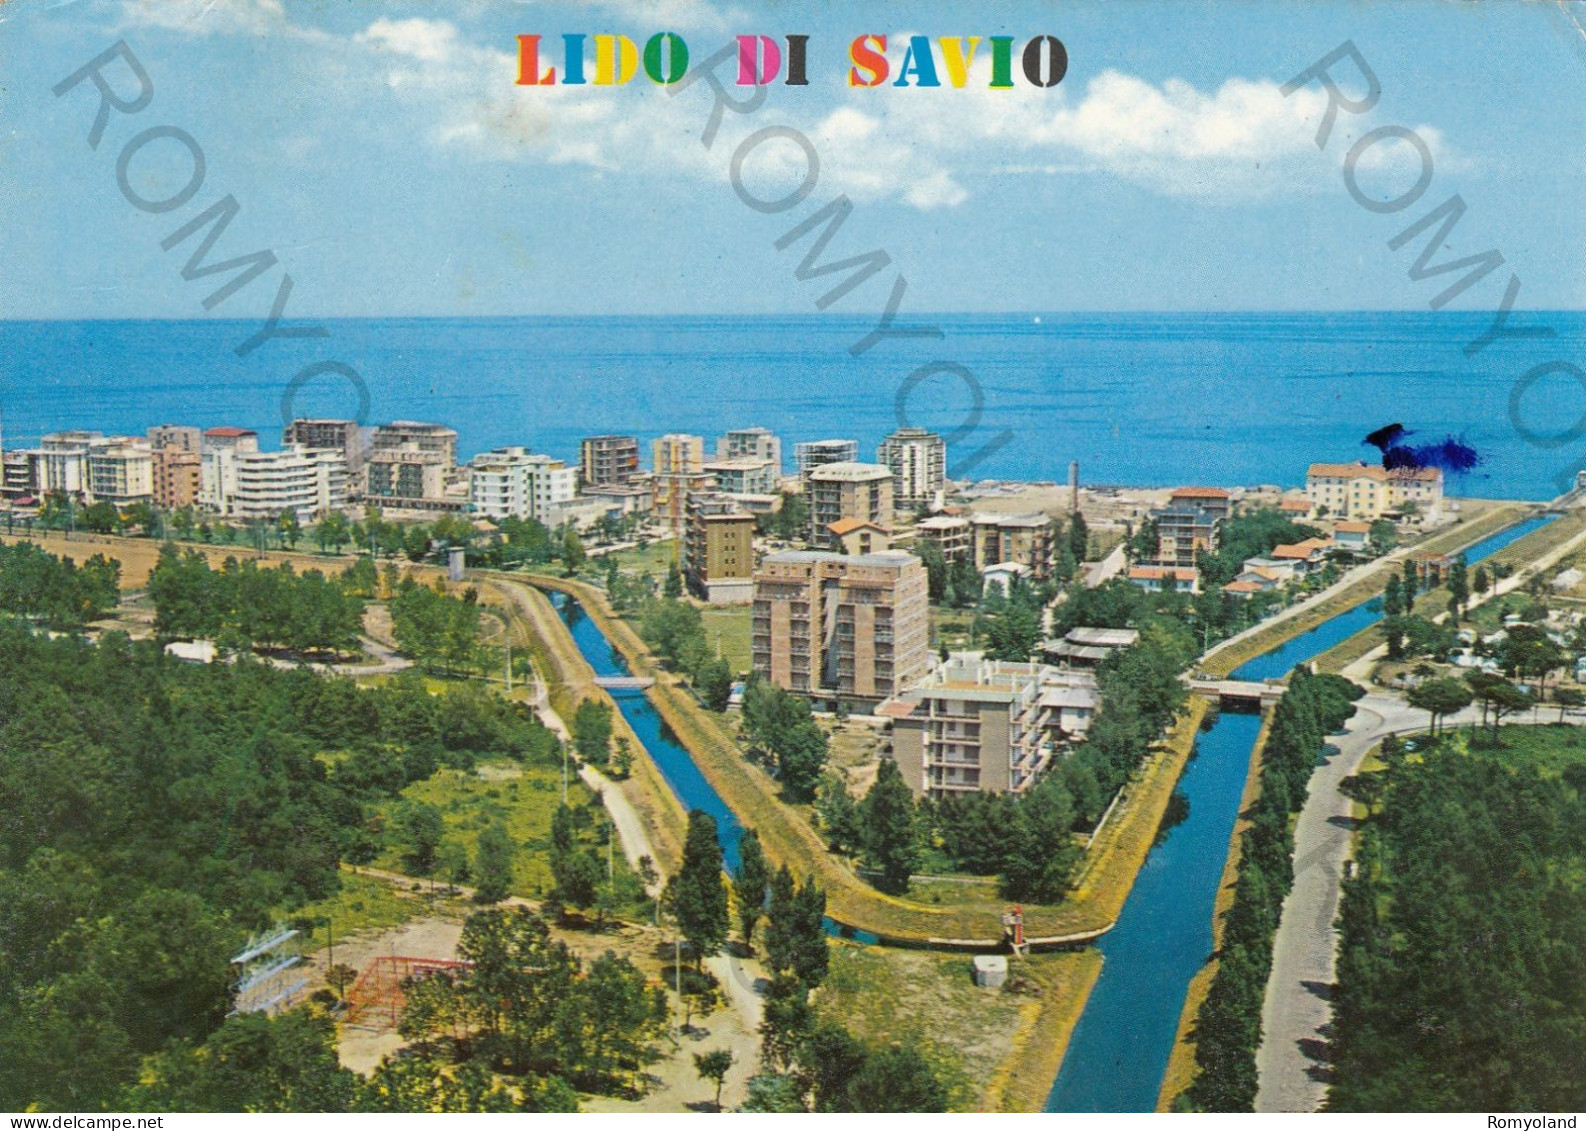 CARTOLINA  C10 LIDO DI SAVIO,RAVENNA,EMILIA ROMAGNA-PANORAMA-MARE,SOLE,ESTATE,VACANZA,BARCHE A VELA,VIAGGIATA 1972 - Ravenna